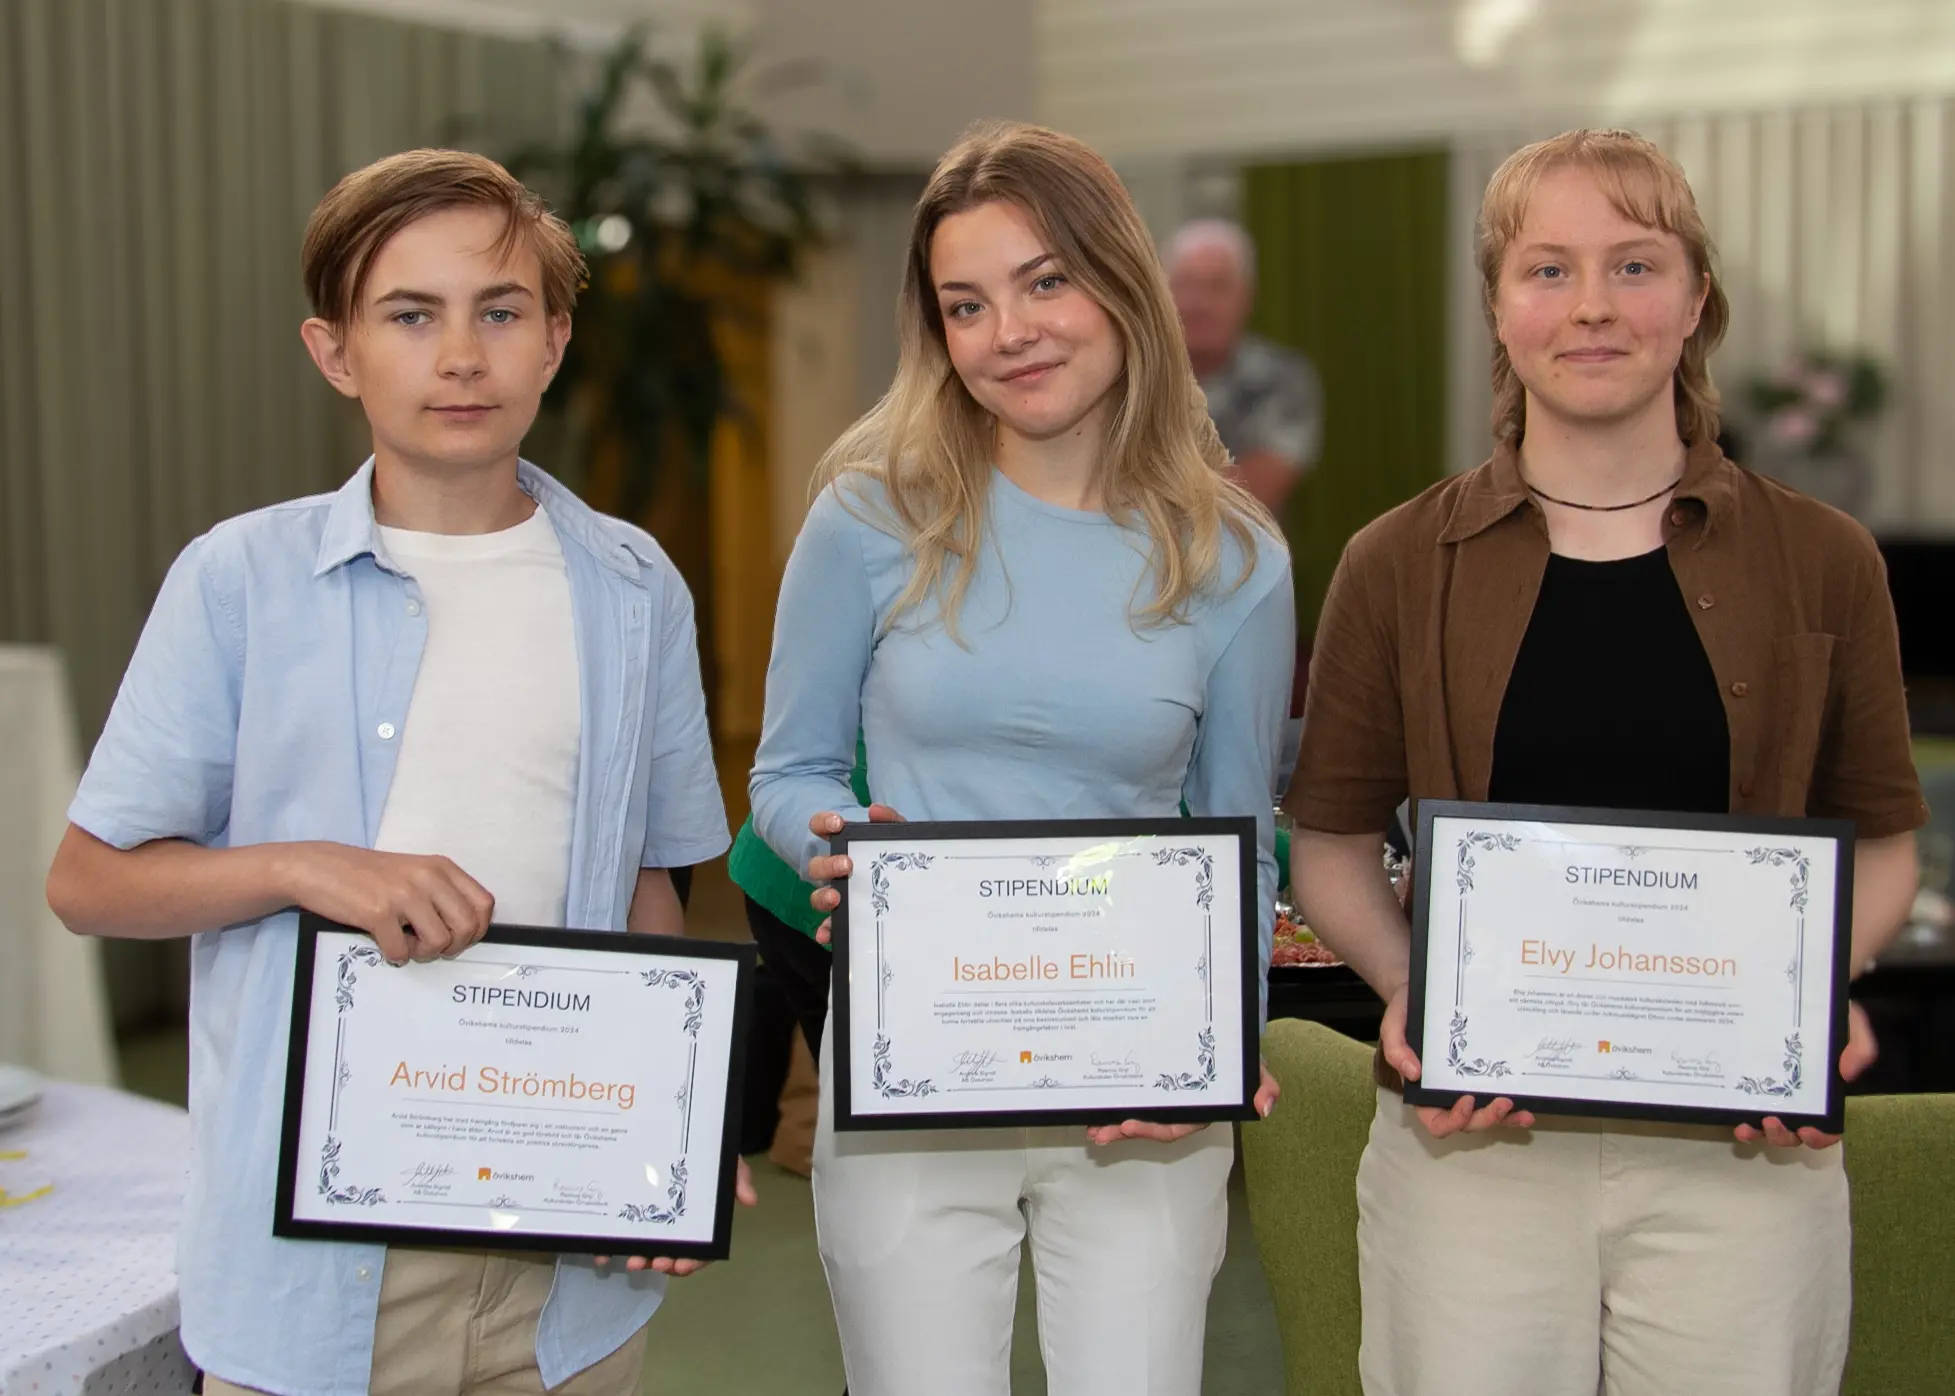 Stipendiaterna Arvid Strömberg, Isabelle Ehlin och Elvy Johansson med sina stipendiumdiplom.